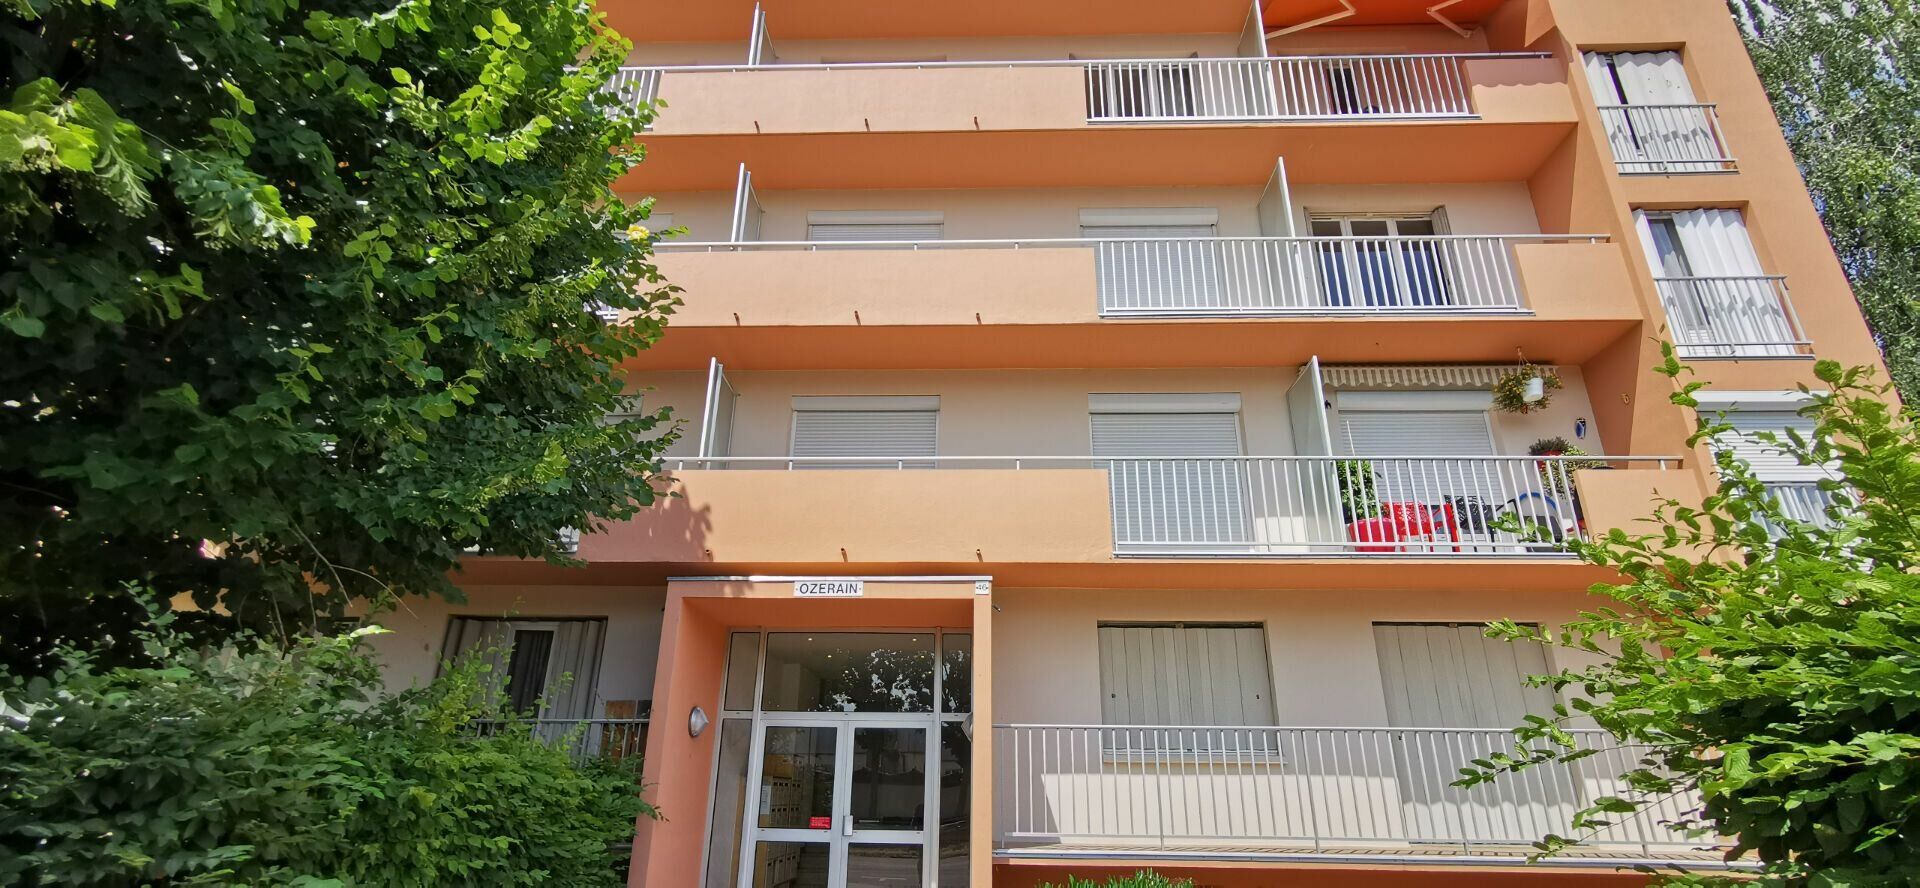 Appartement à vendre 1 21400m2 à Dijon vignette-10